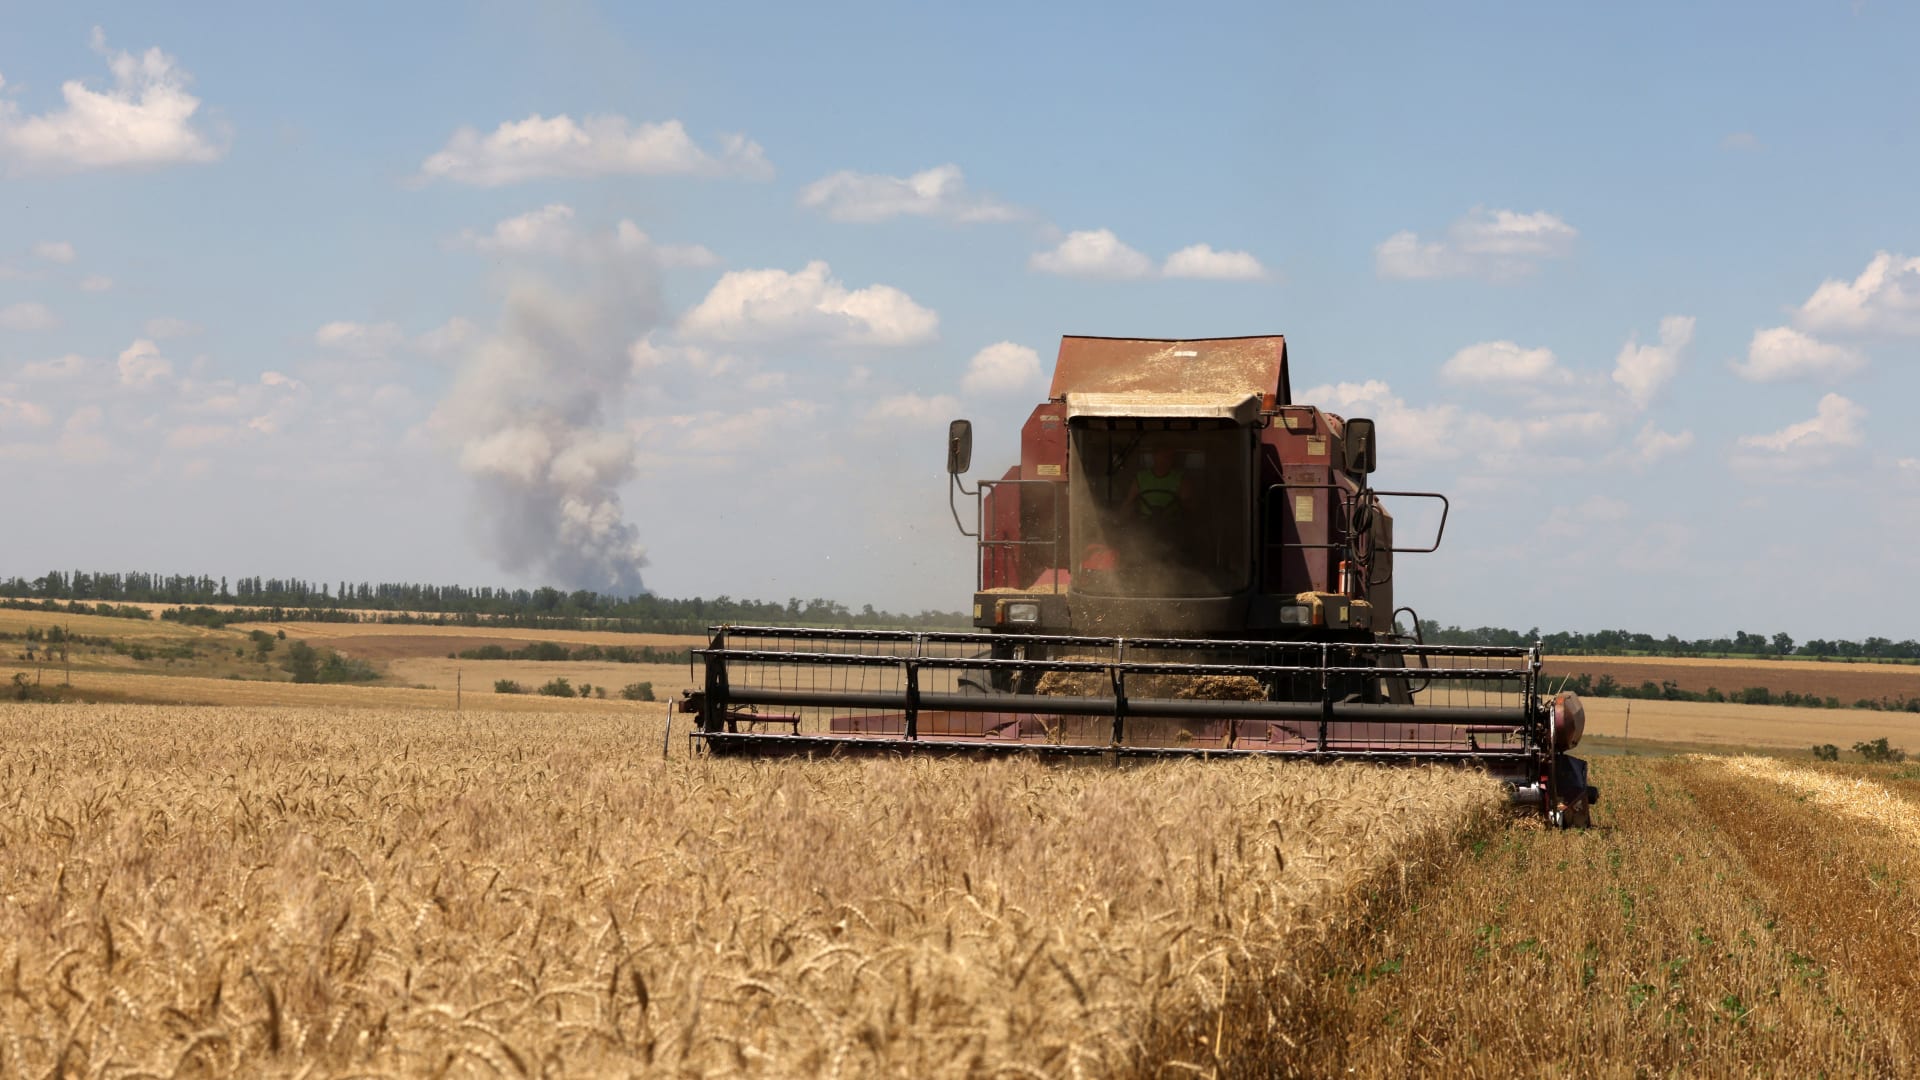 كاميرا توثق ما حدث لحظة قصف المدفعية الروسية حقول القمح في أوكرانيا